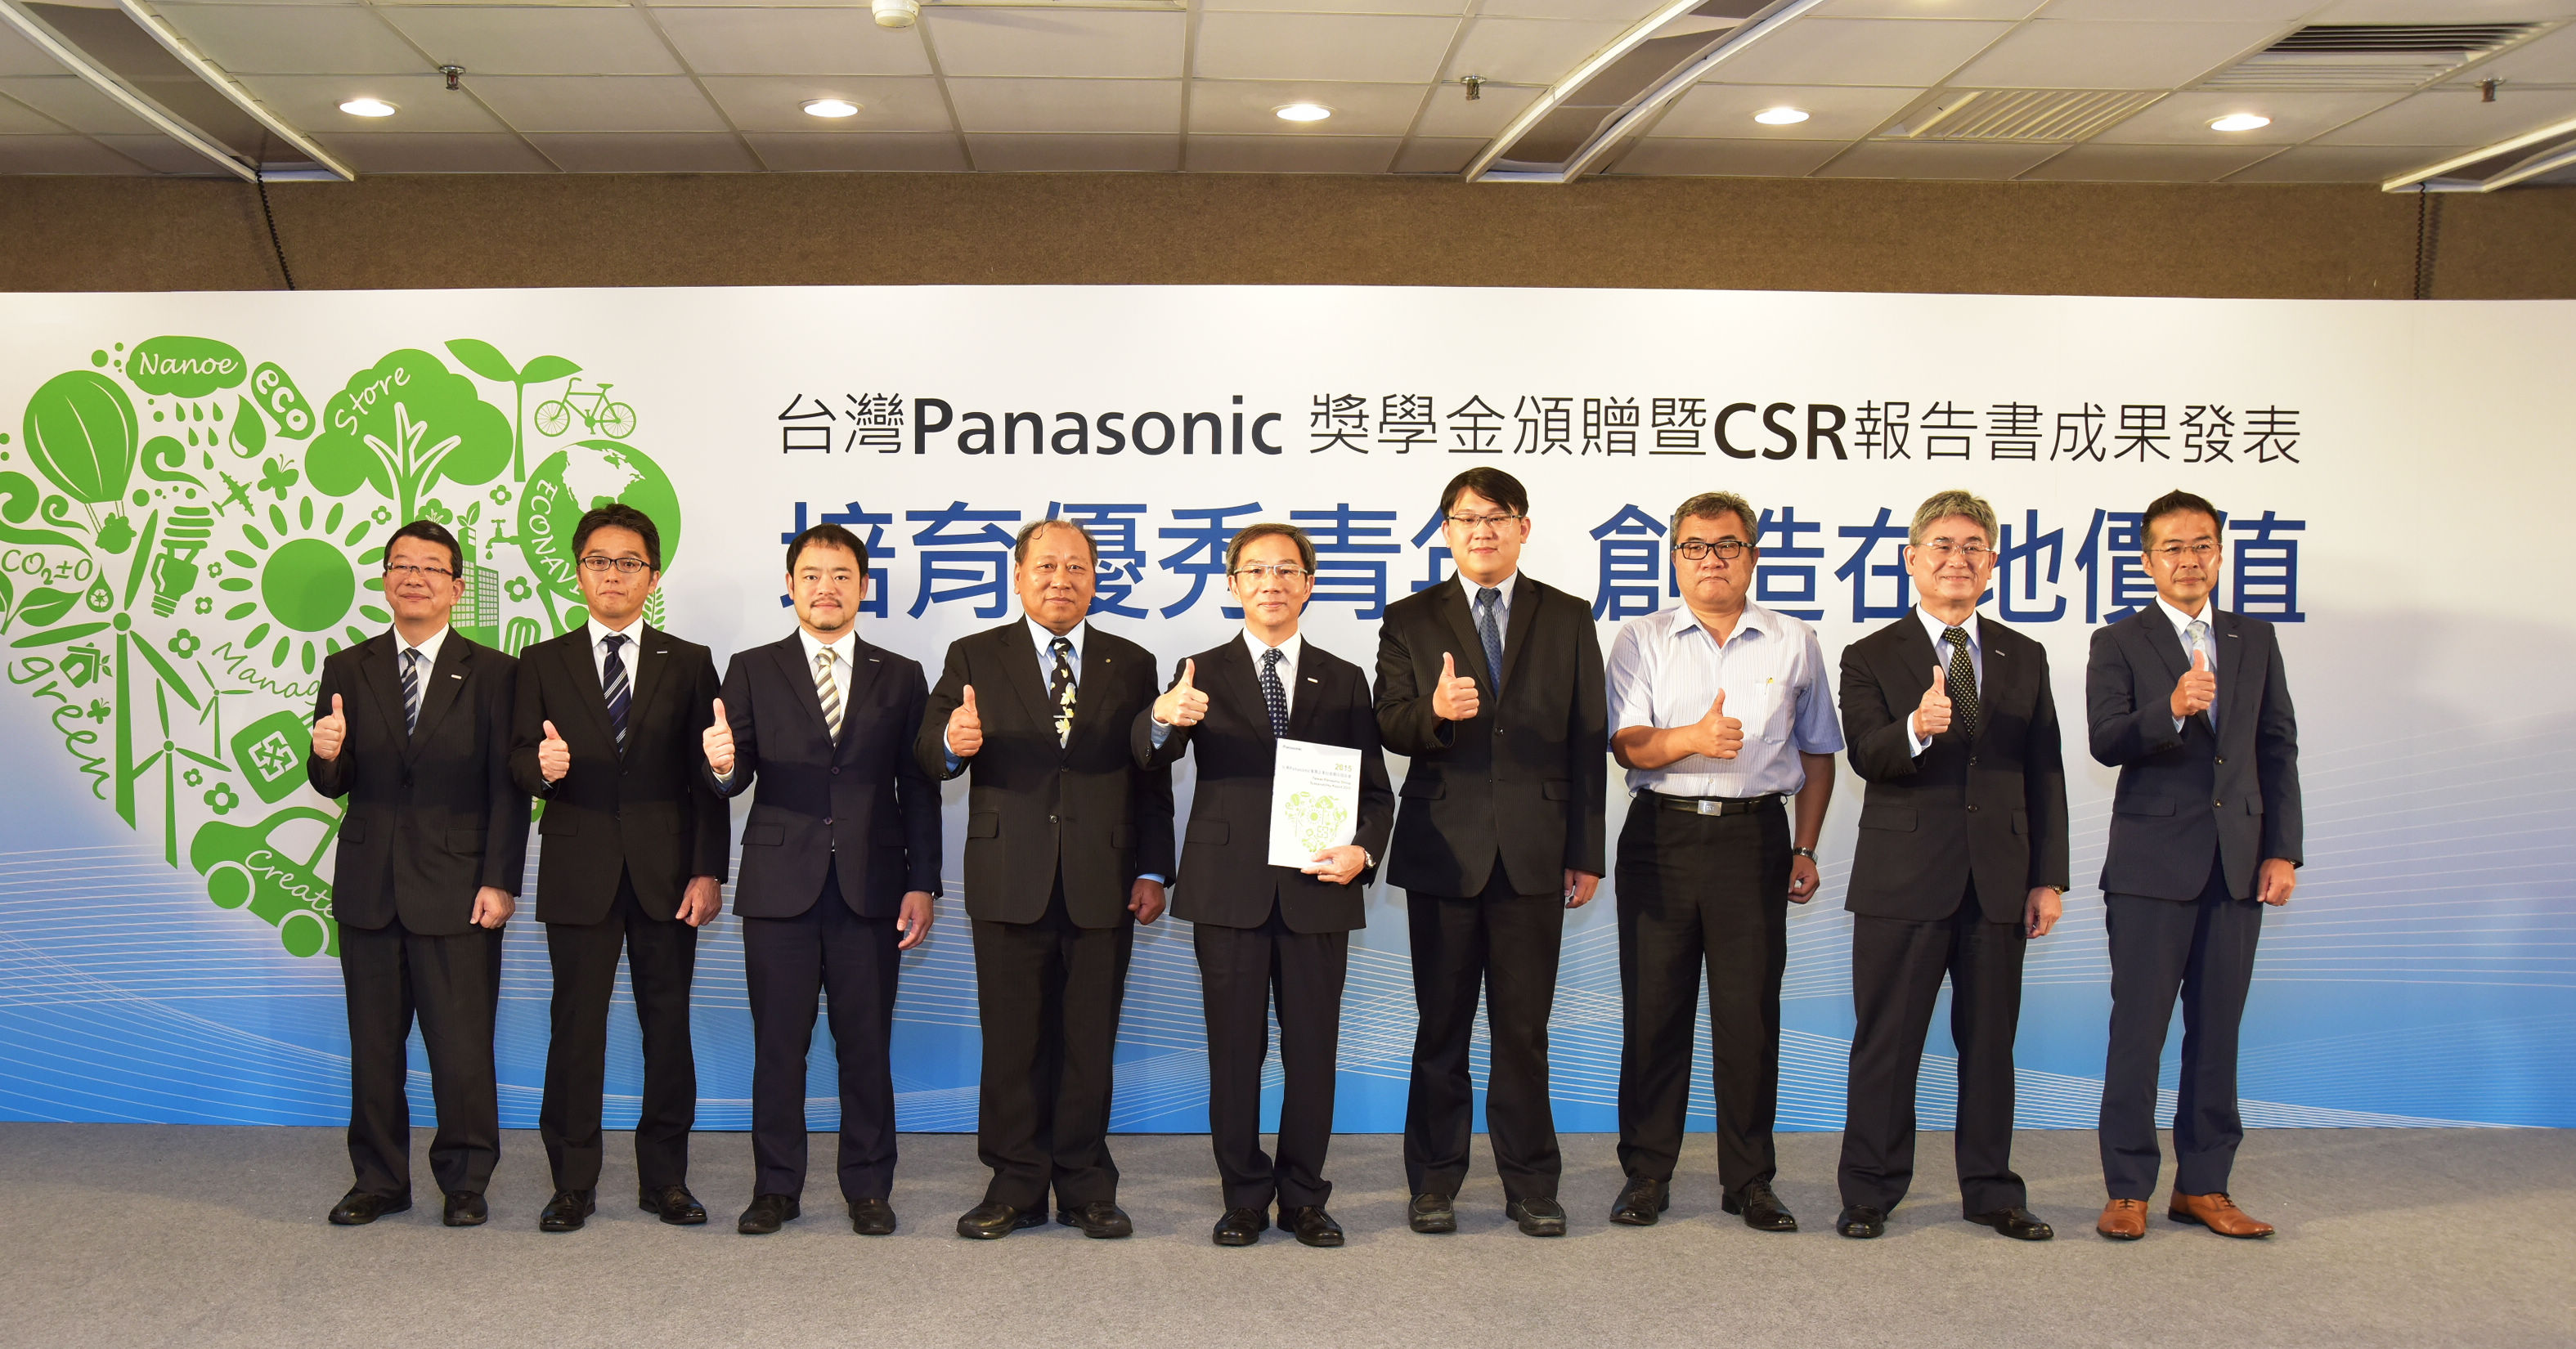 日系家電メーカーで初のCSR報告書を発表の写真